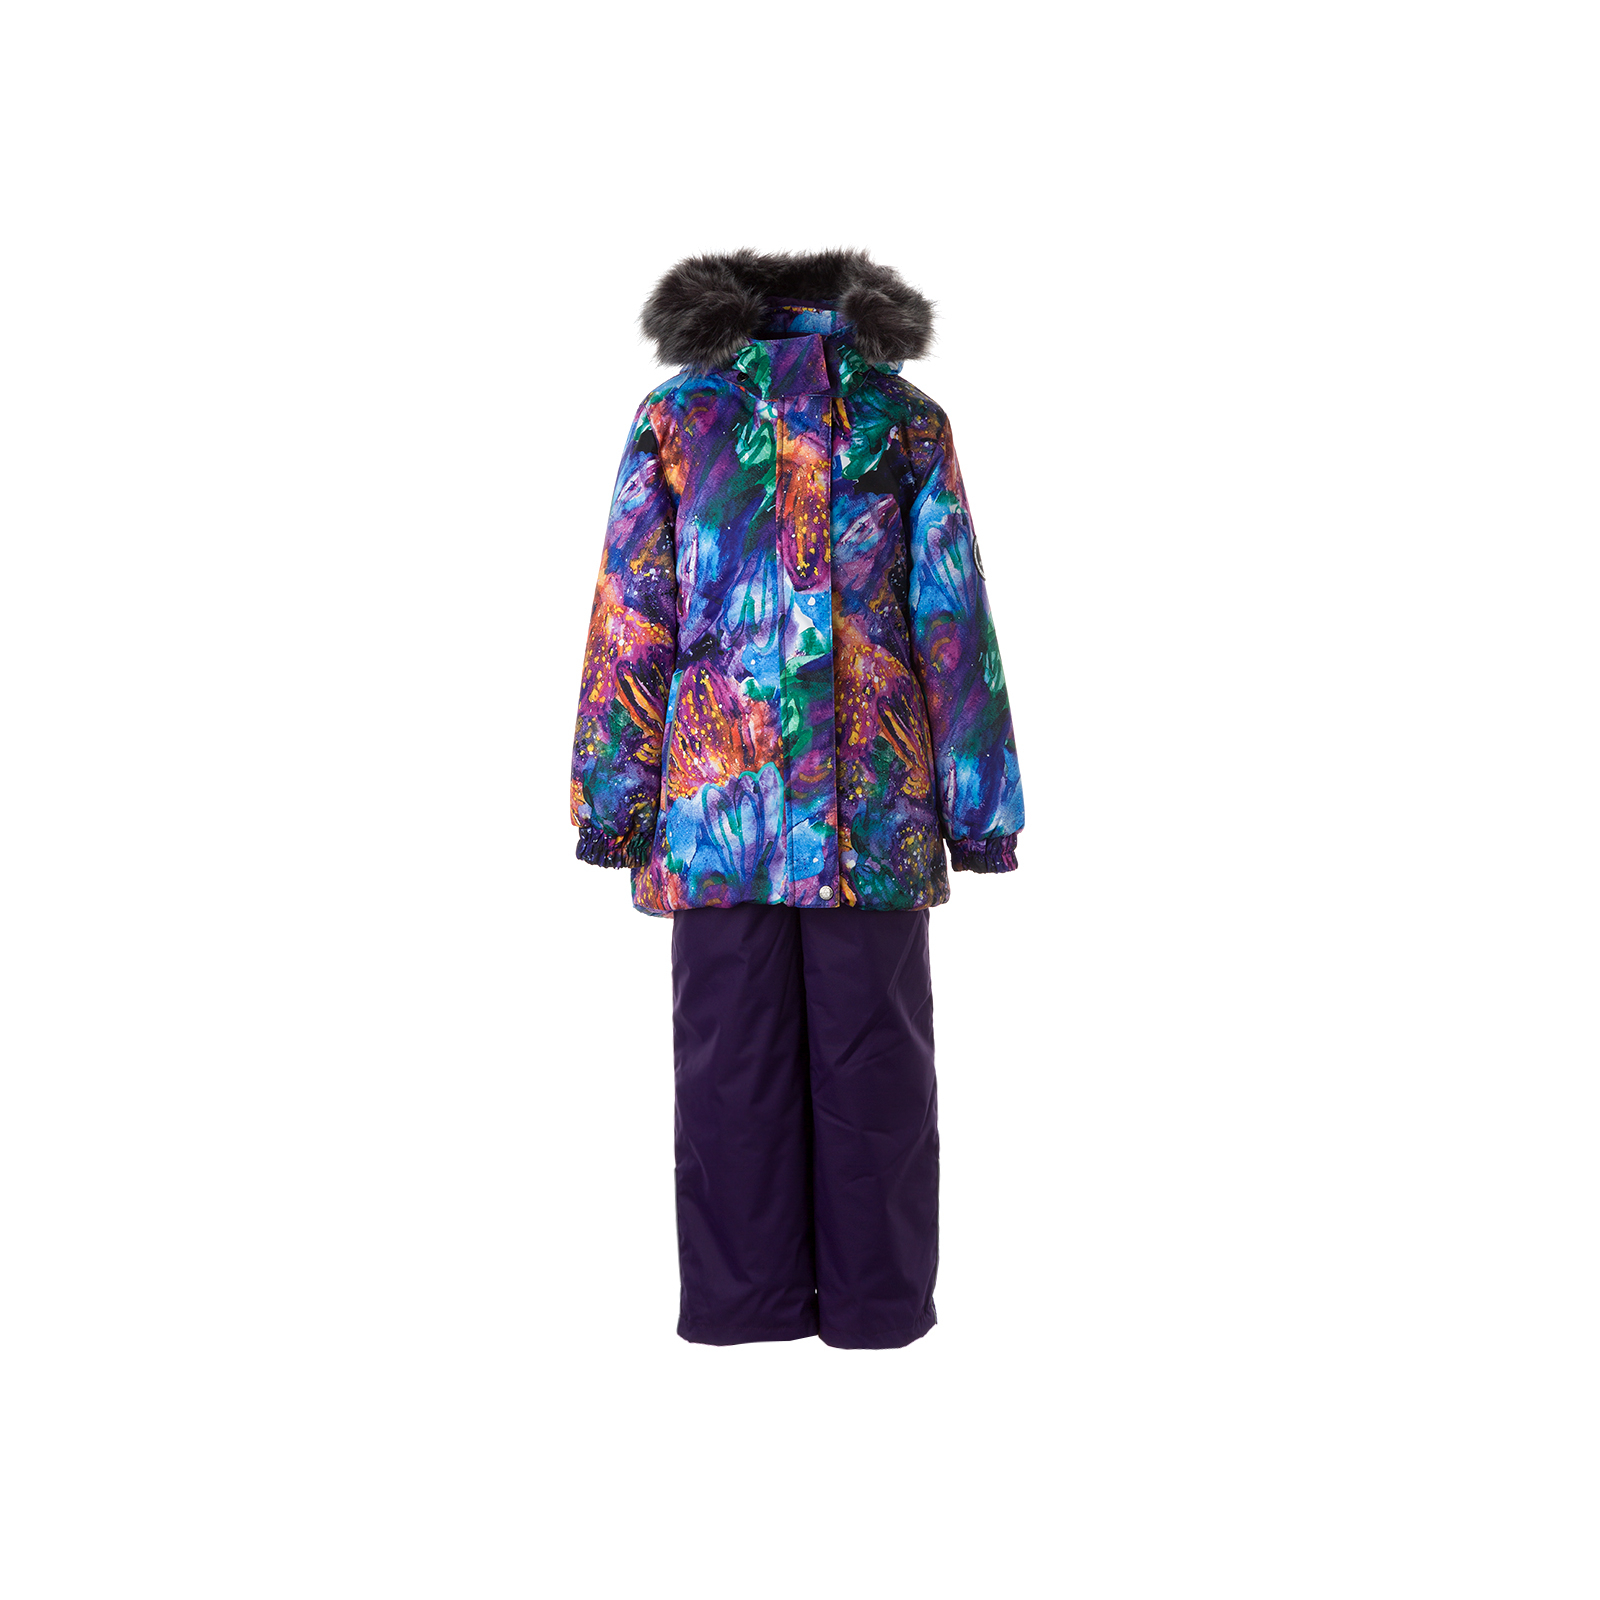 Комплект верхней одежды Huppa RENELY 2 41850230 пурпур с принтом/тёмно-лилoвый 104 (4741468979014)